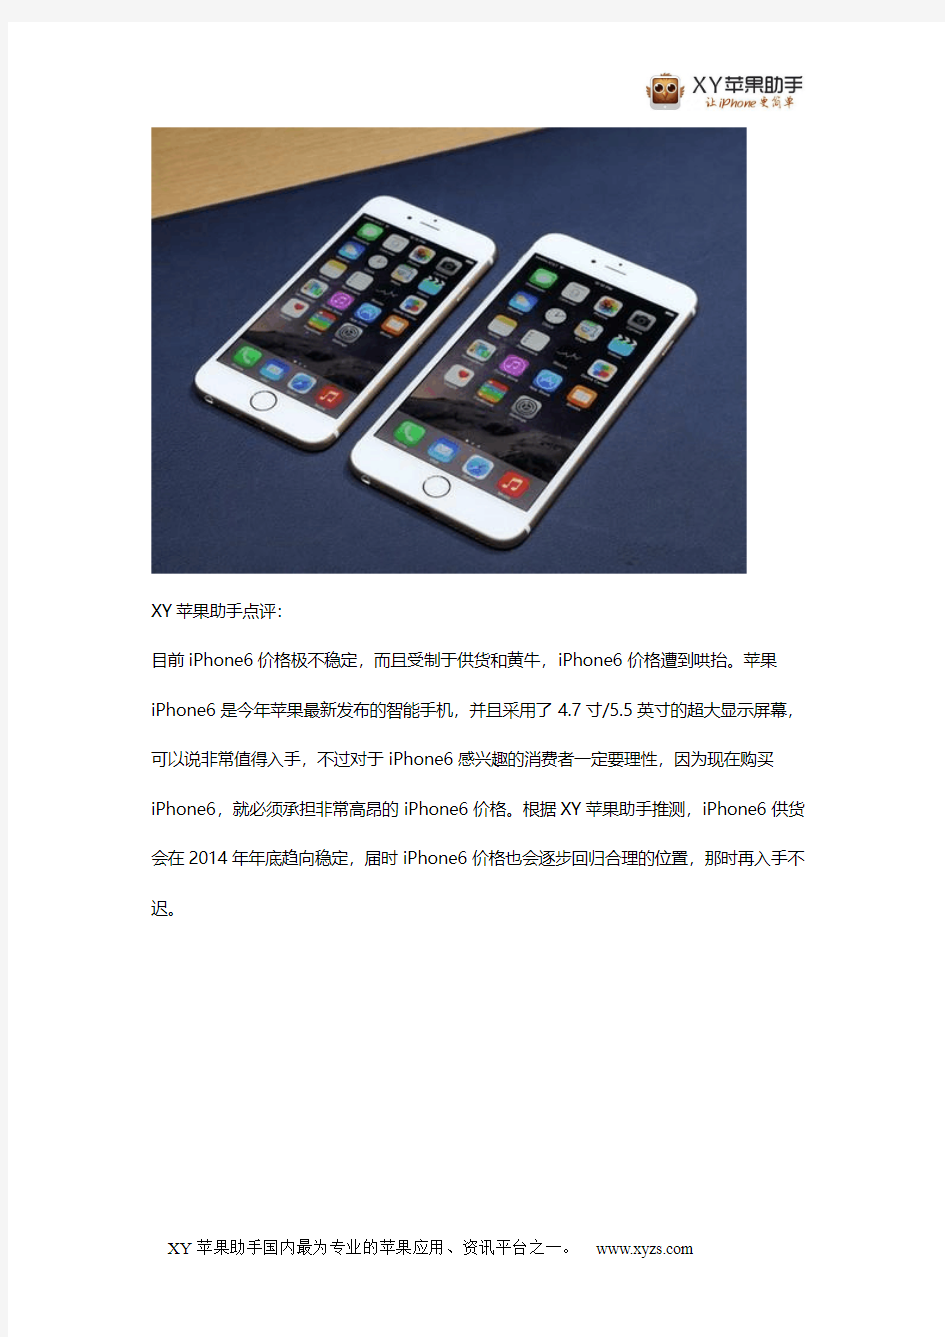 iPhone6价格仍不稳定,港版iPhone6价格一万五